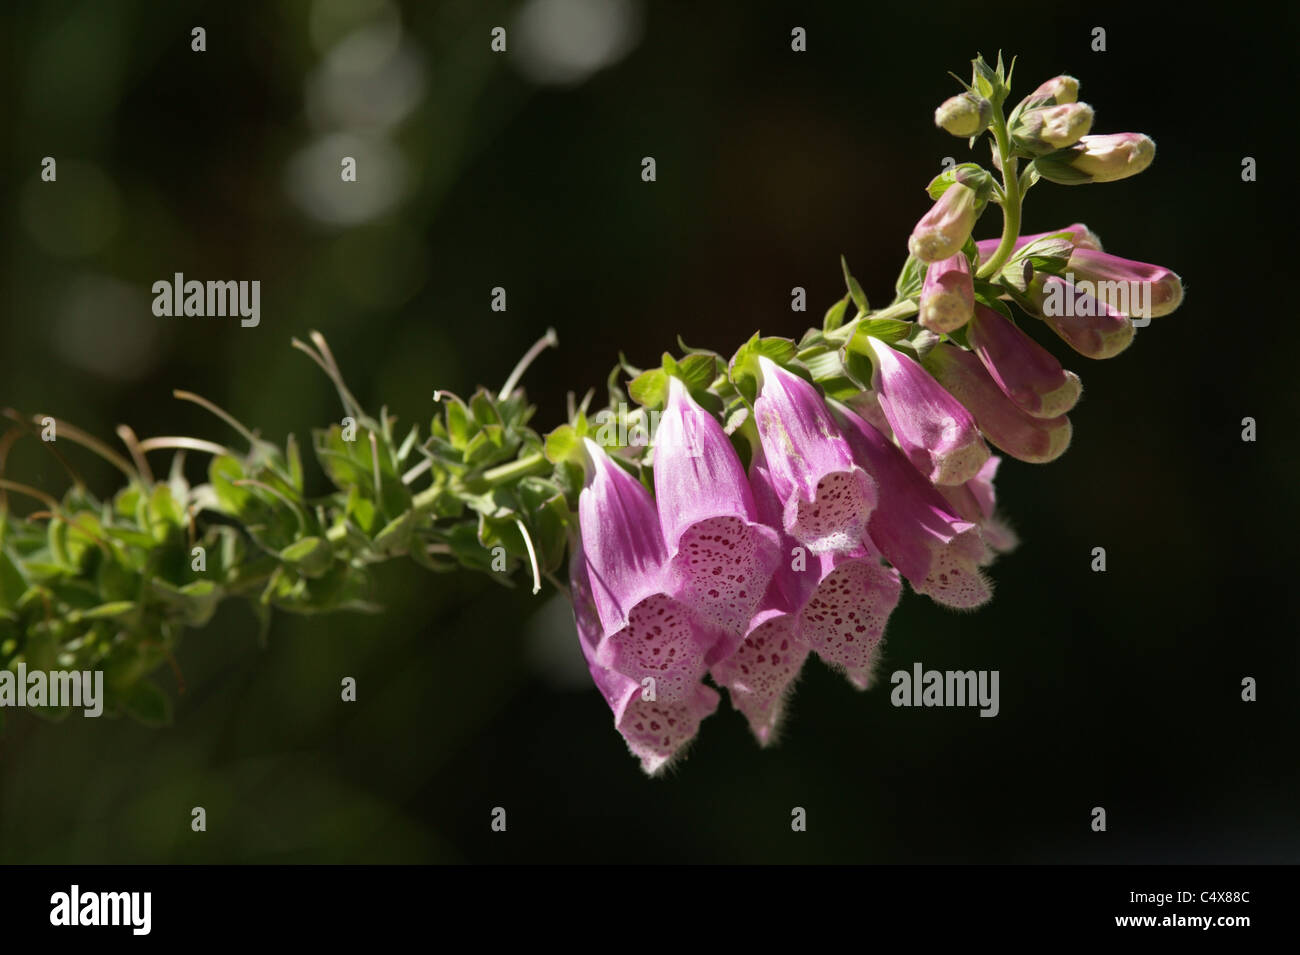 foxglove, digitalis purpurea Stock Photo